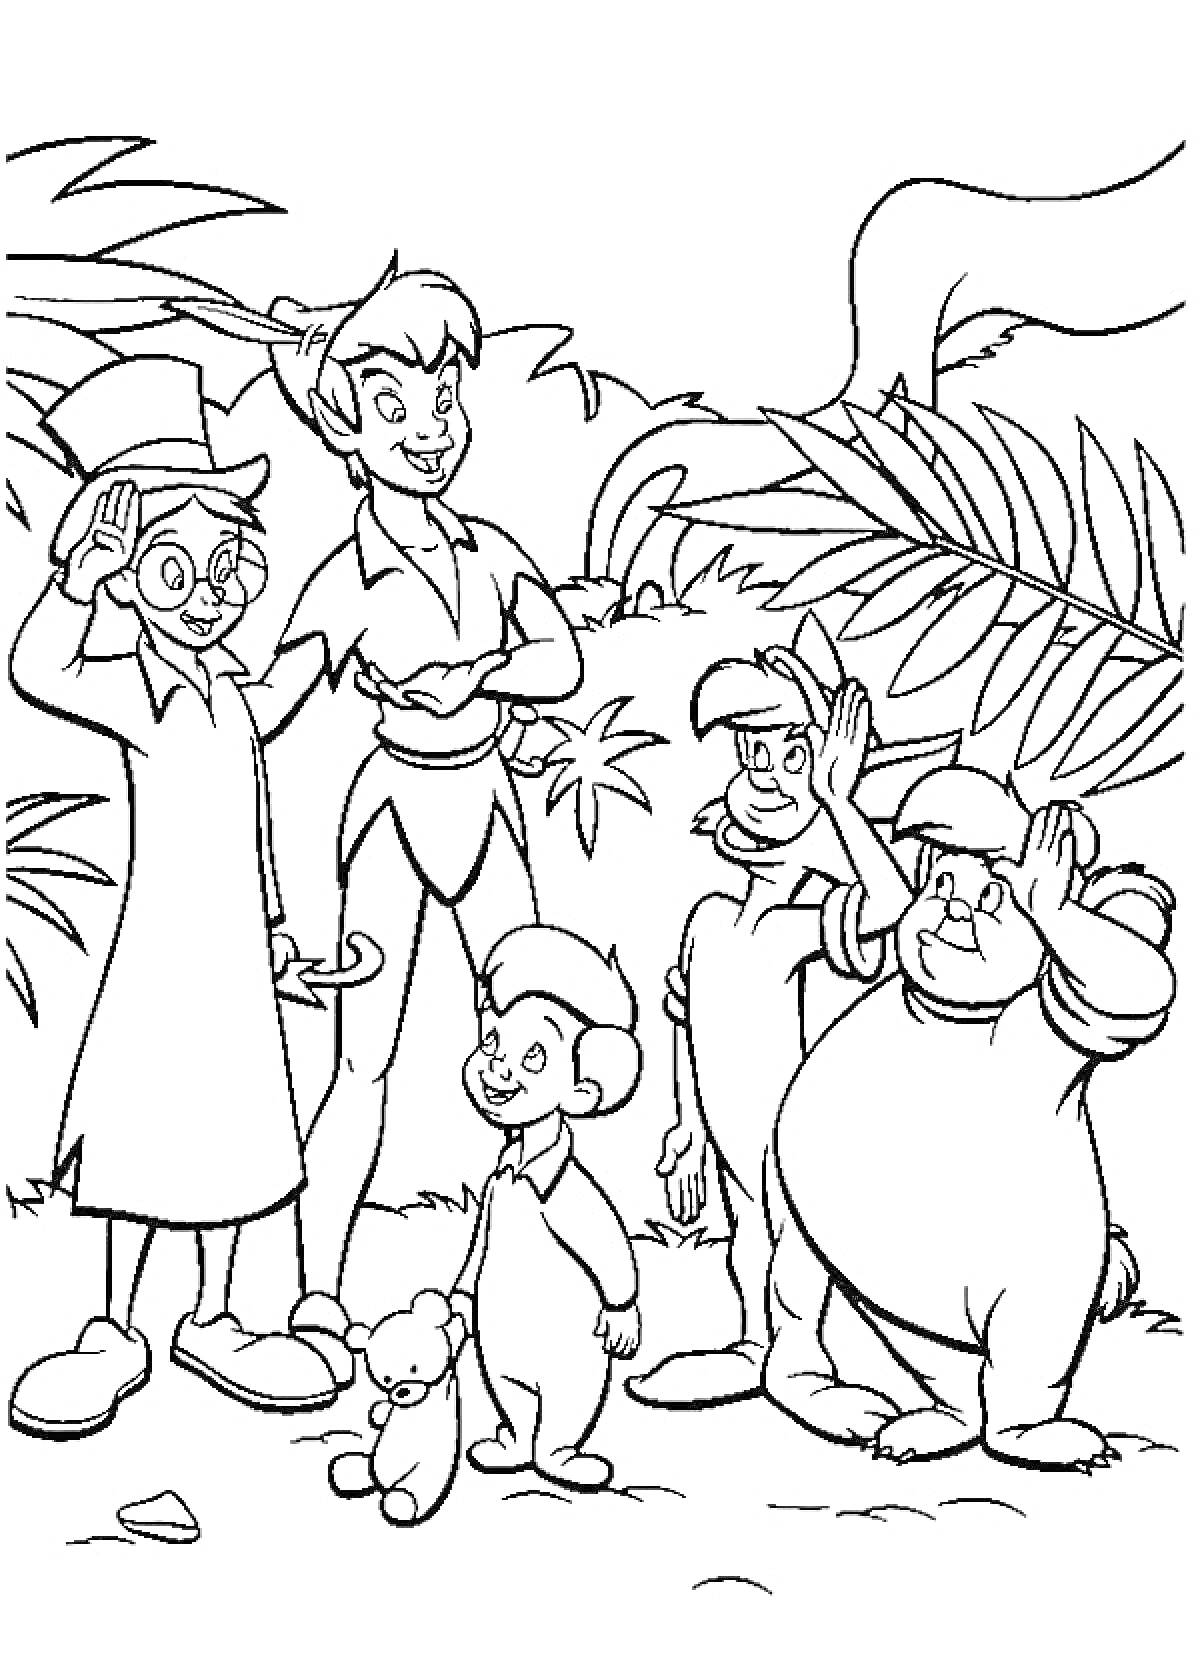 Питер Пен с детьми в джунглях